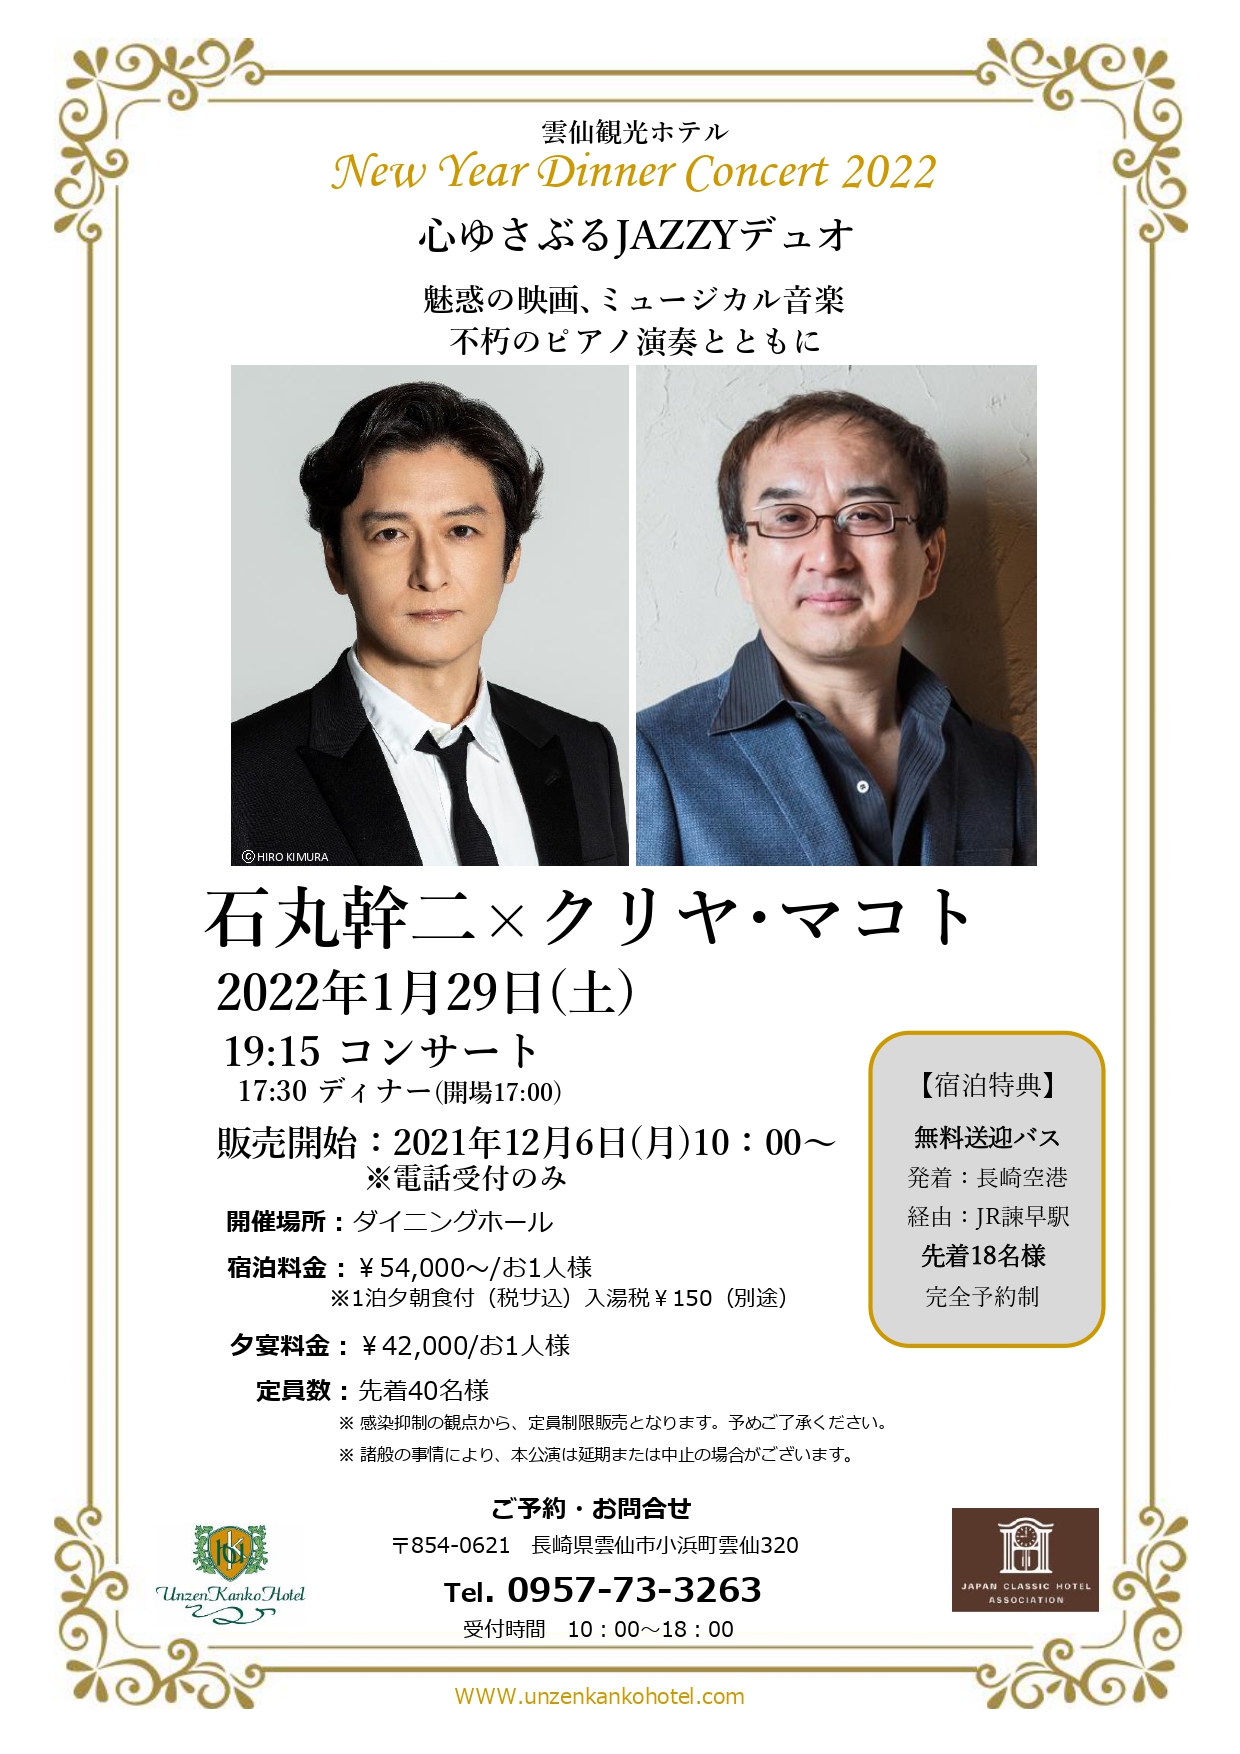 雲仙観光ホテル New Year Dinner Concert 2022